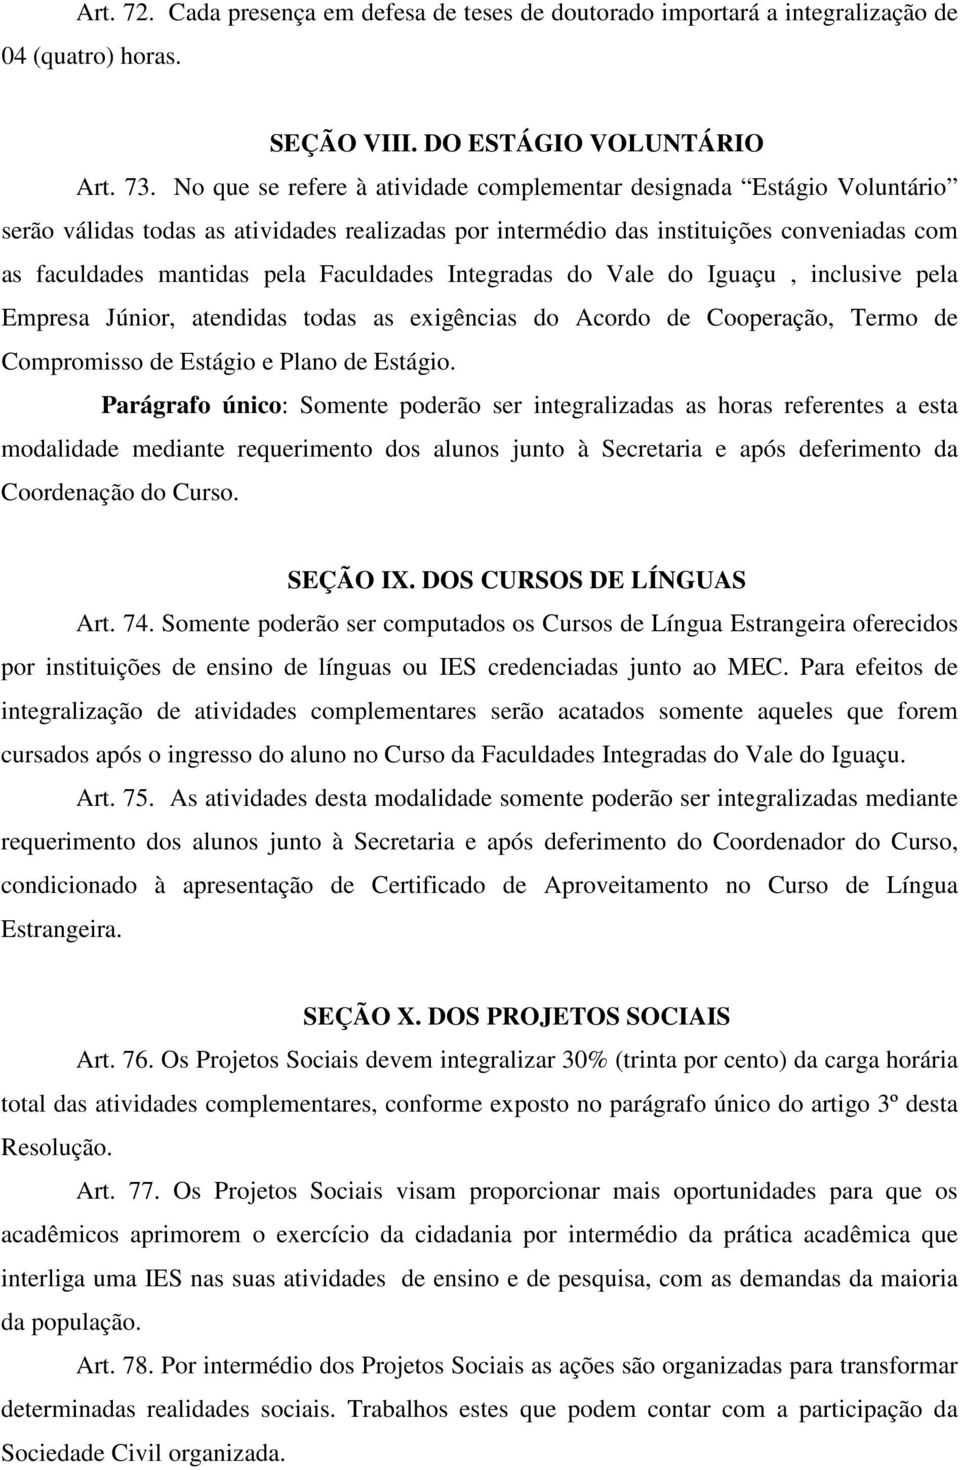 Faculdades Integradas do Vale do Iguaçu, inclusive pela Empresa Júnior, atendidas todas as exigências do Acordo de Cooperação, Termo de Compromisso de Estágio e Plano de Estágio.